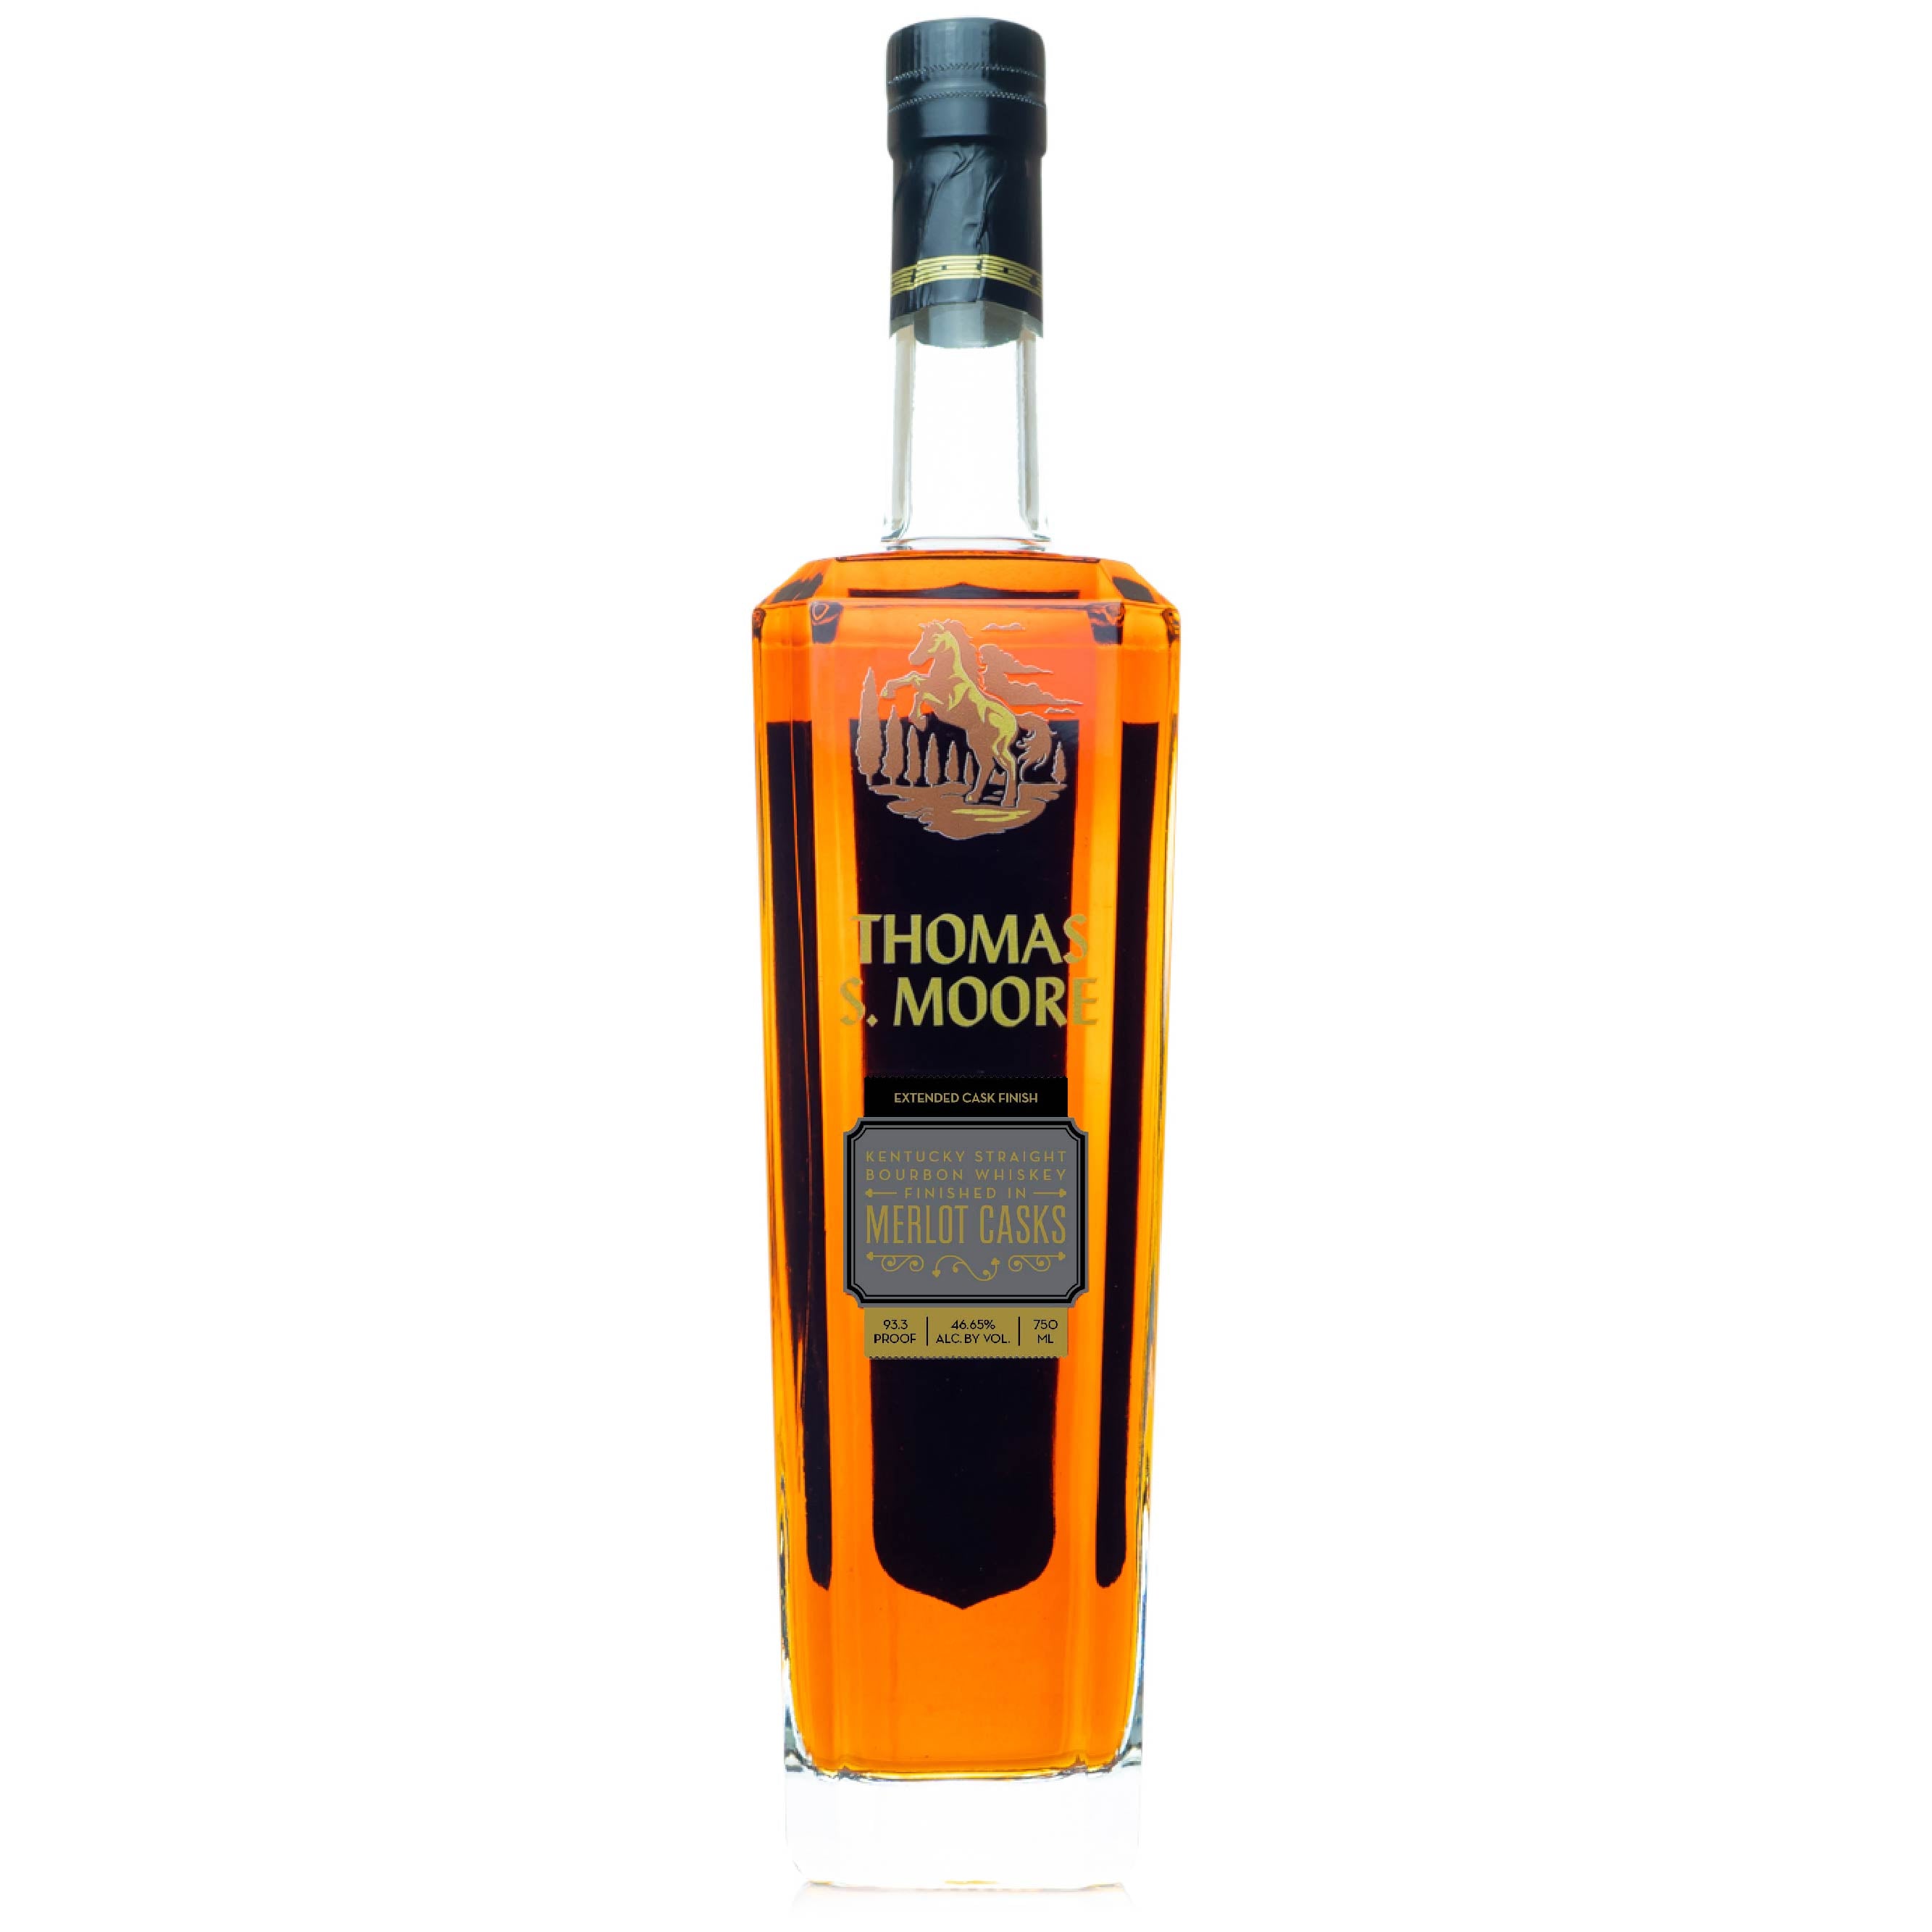 Thomas S. Moore Merlot Casks Bourbon